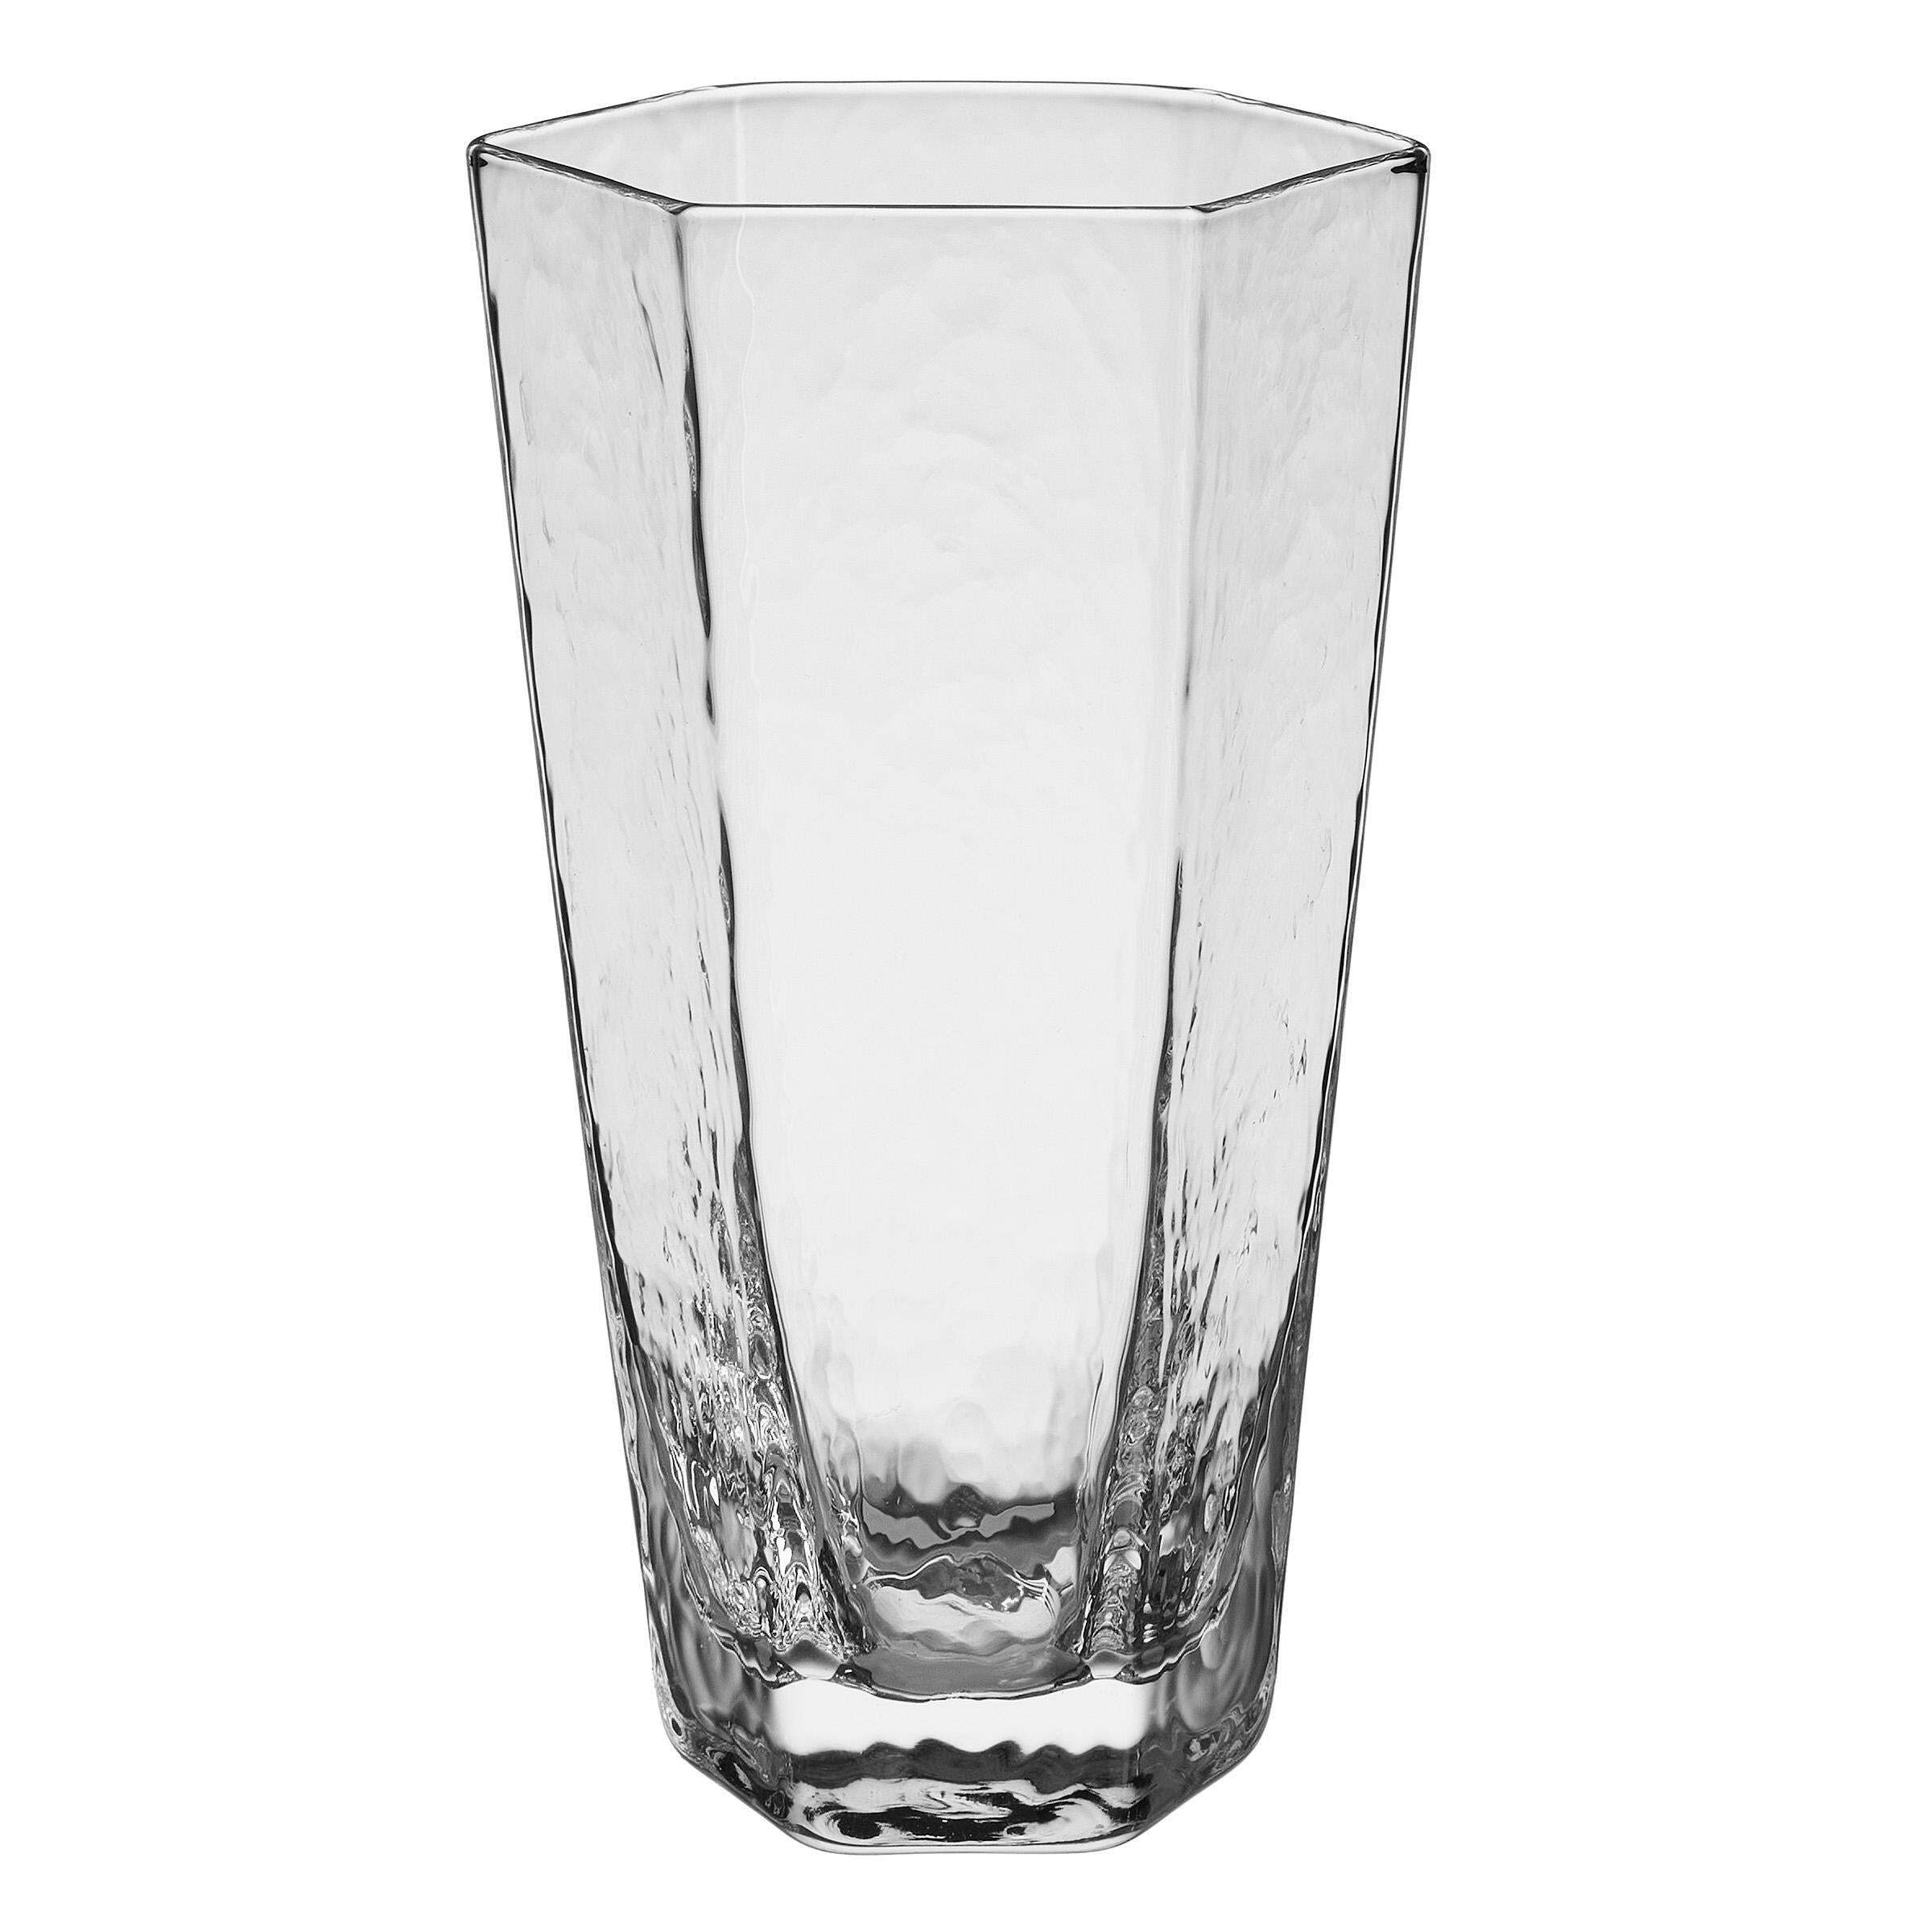 BUTLERS Longdrinkglas CUBES Longdrinkglas 400ml, Glas